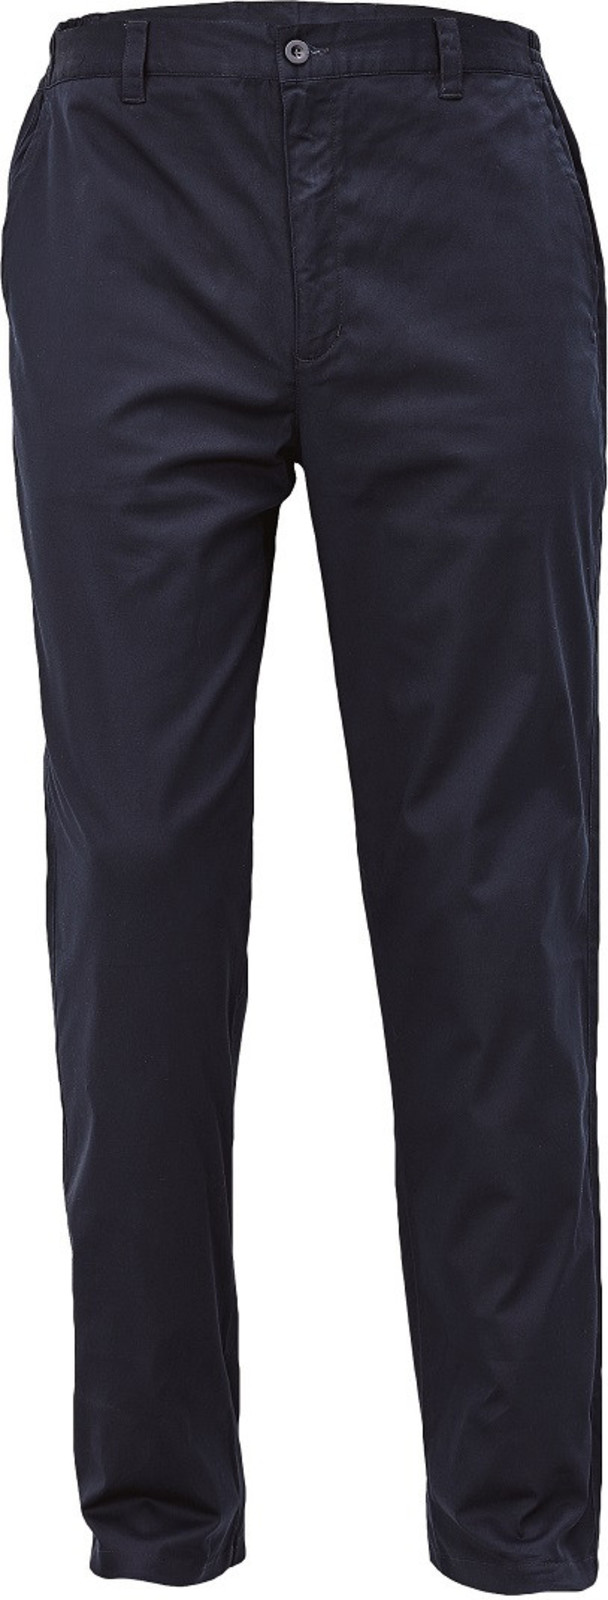 Voľnočasové nohavice Lagan pánske - veľkosť: 48, farba: navy